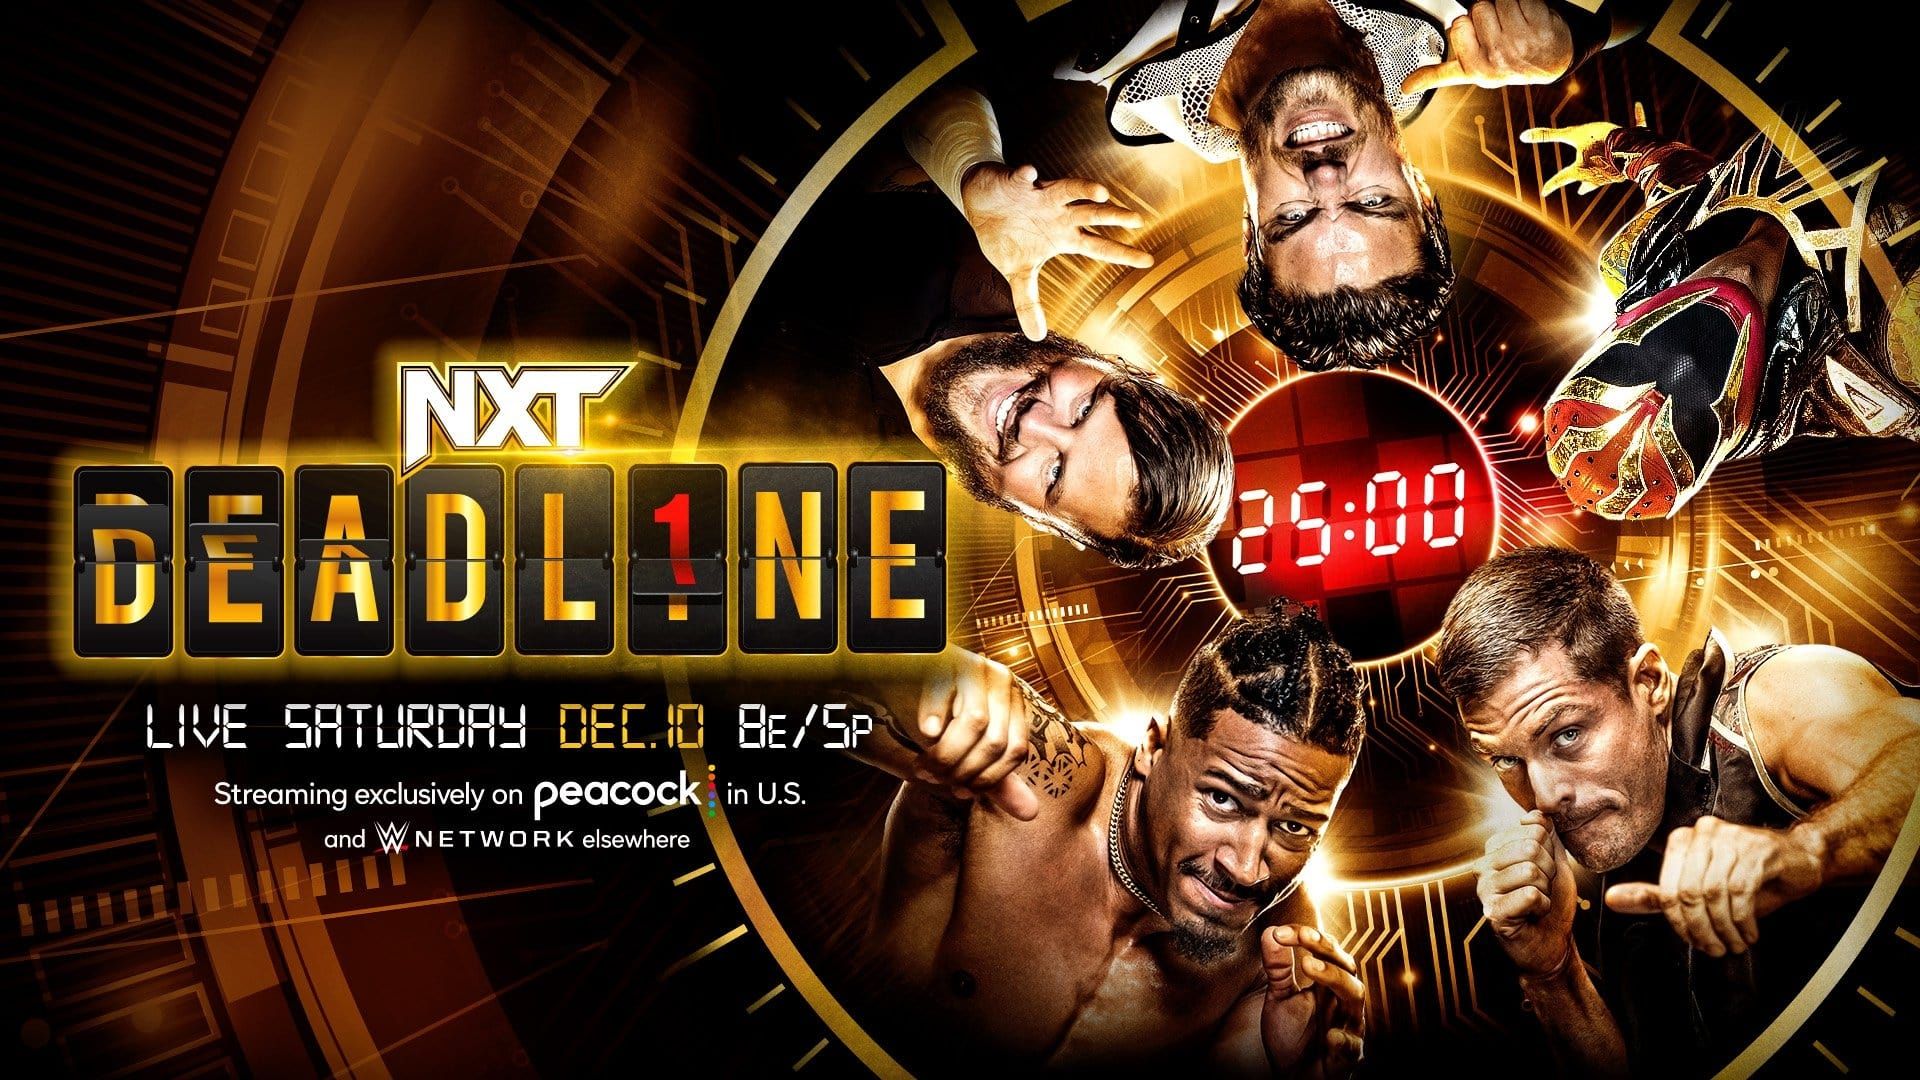 NXT Deadline background